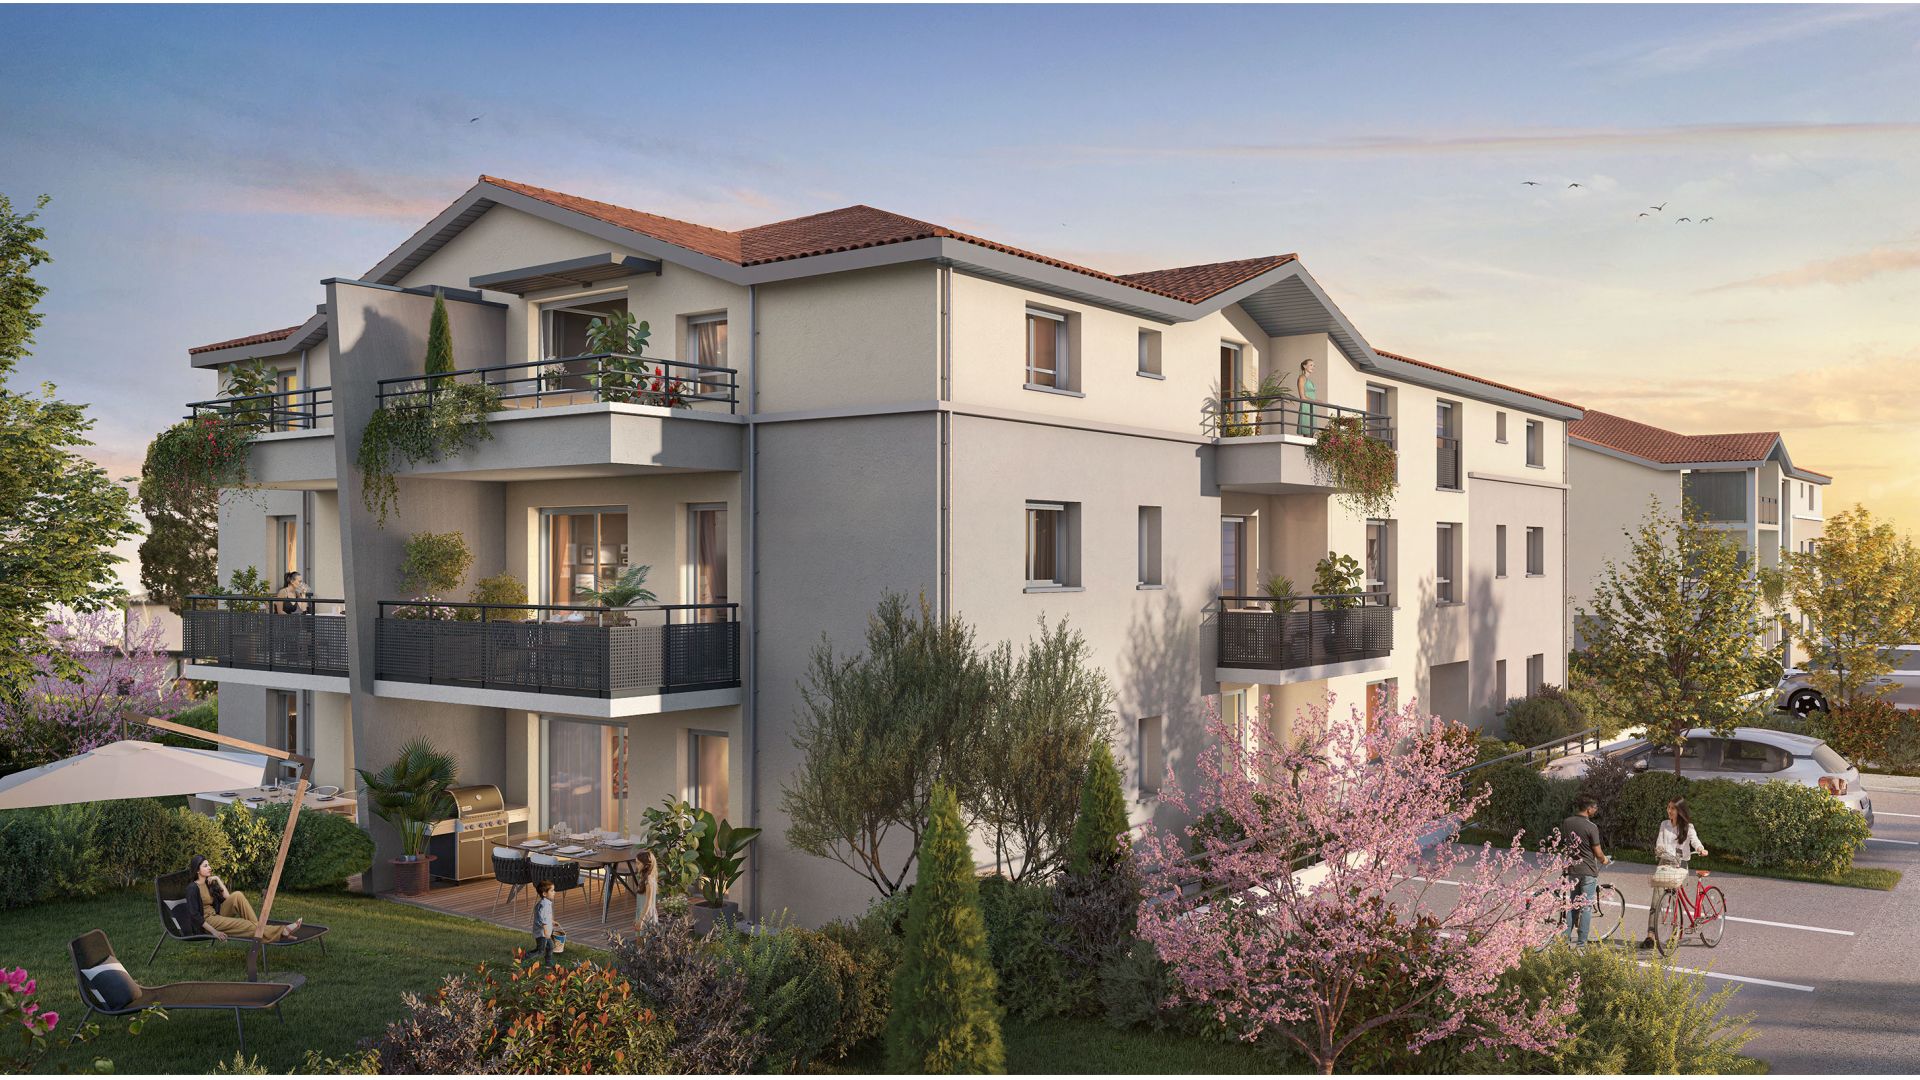 Greencity immobilier - achat appartements neufs du T2 au T3 - Résidence Le Candice - BRUGUIÈRES 31150